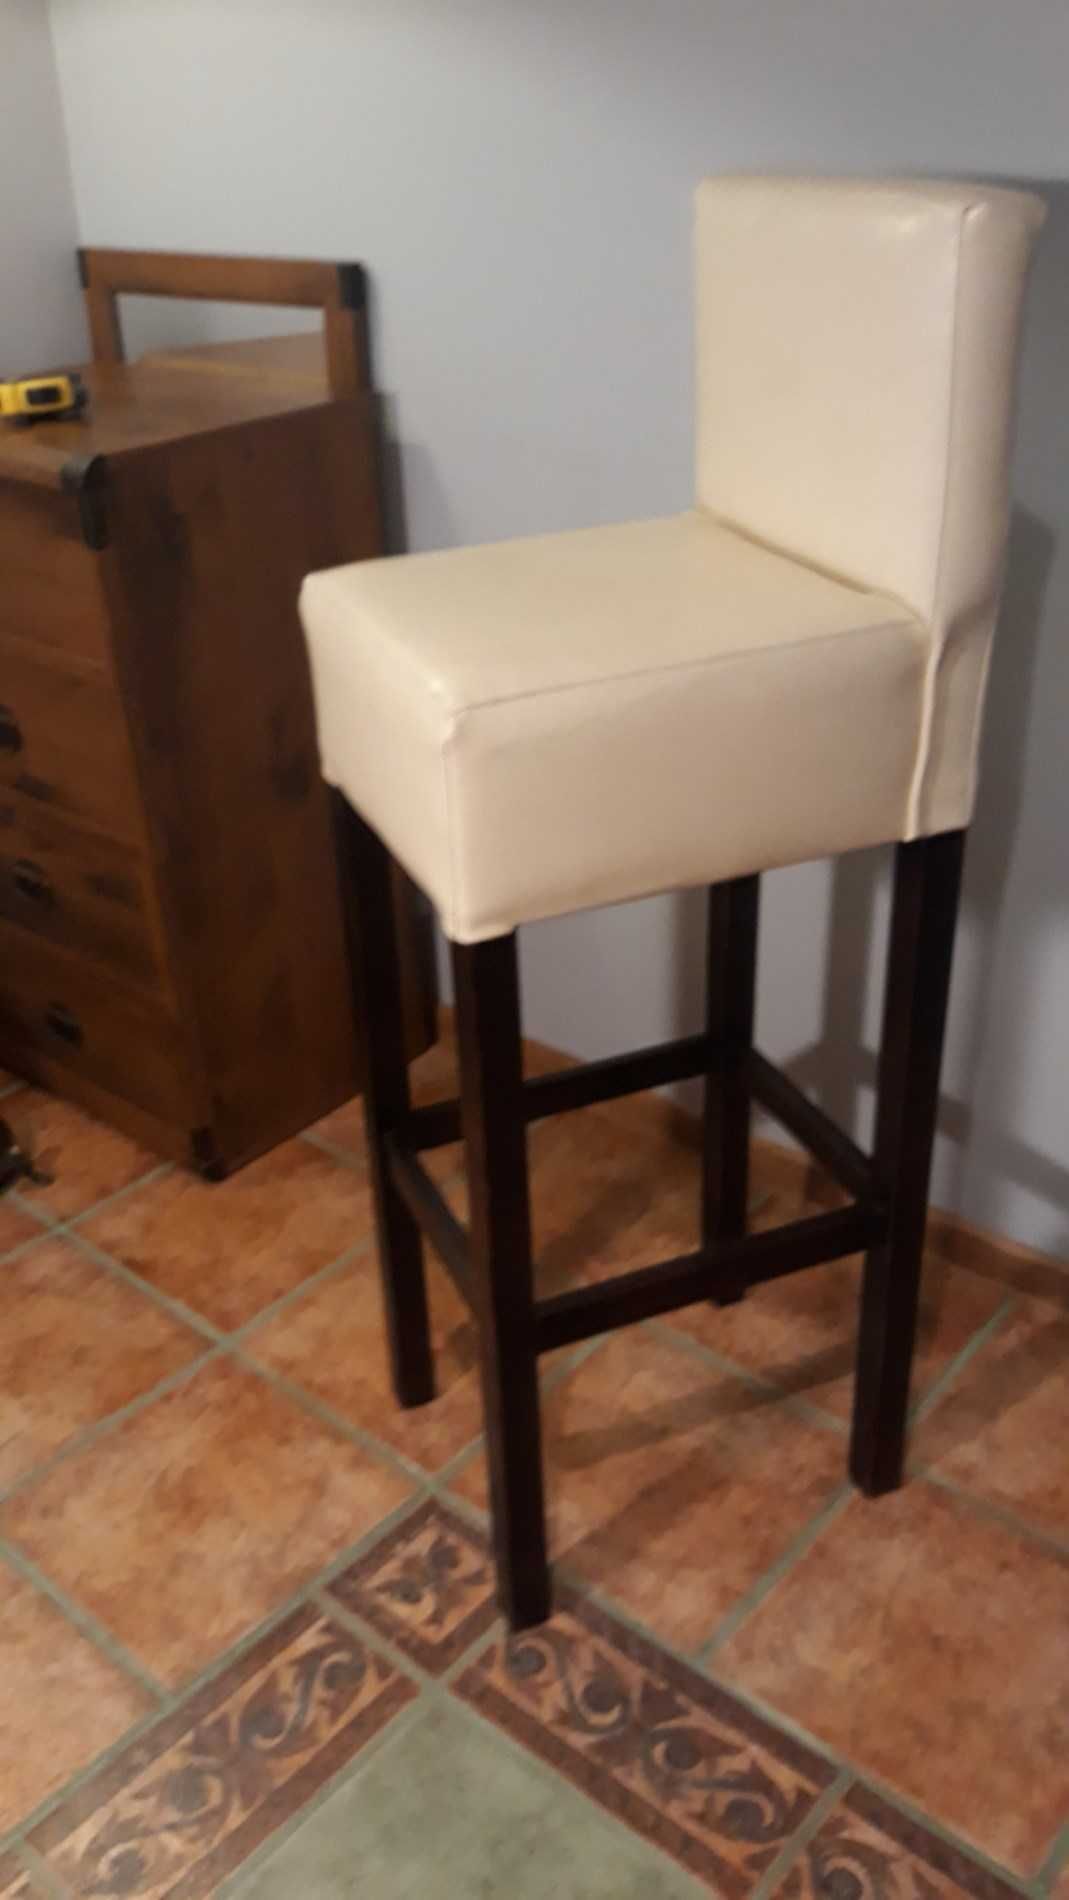 Hoker stołek krzesło barowe drewno skóra